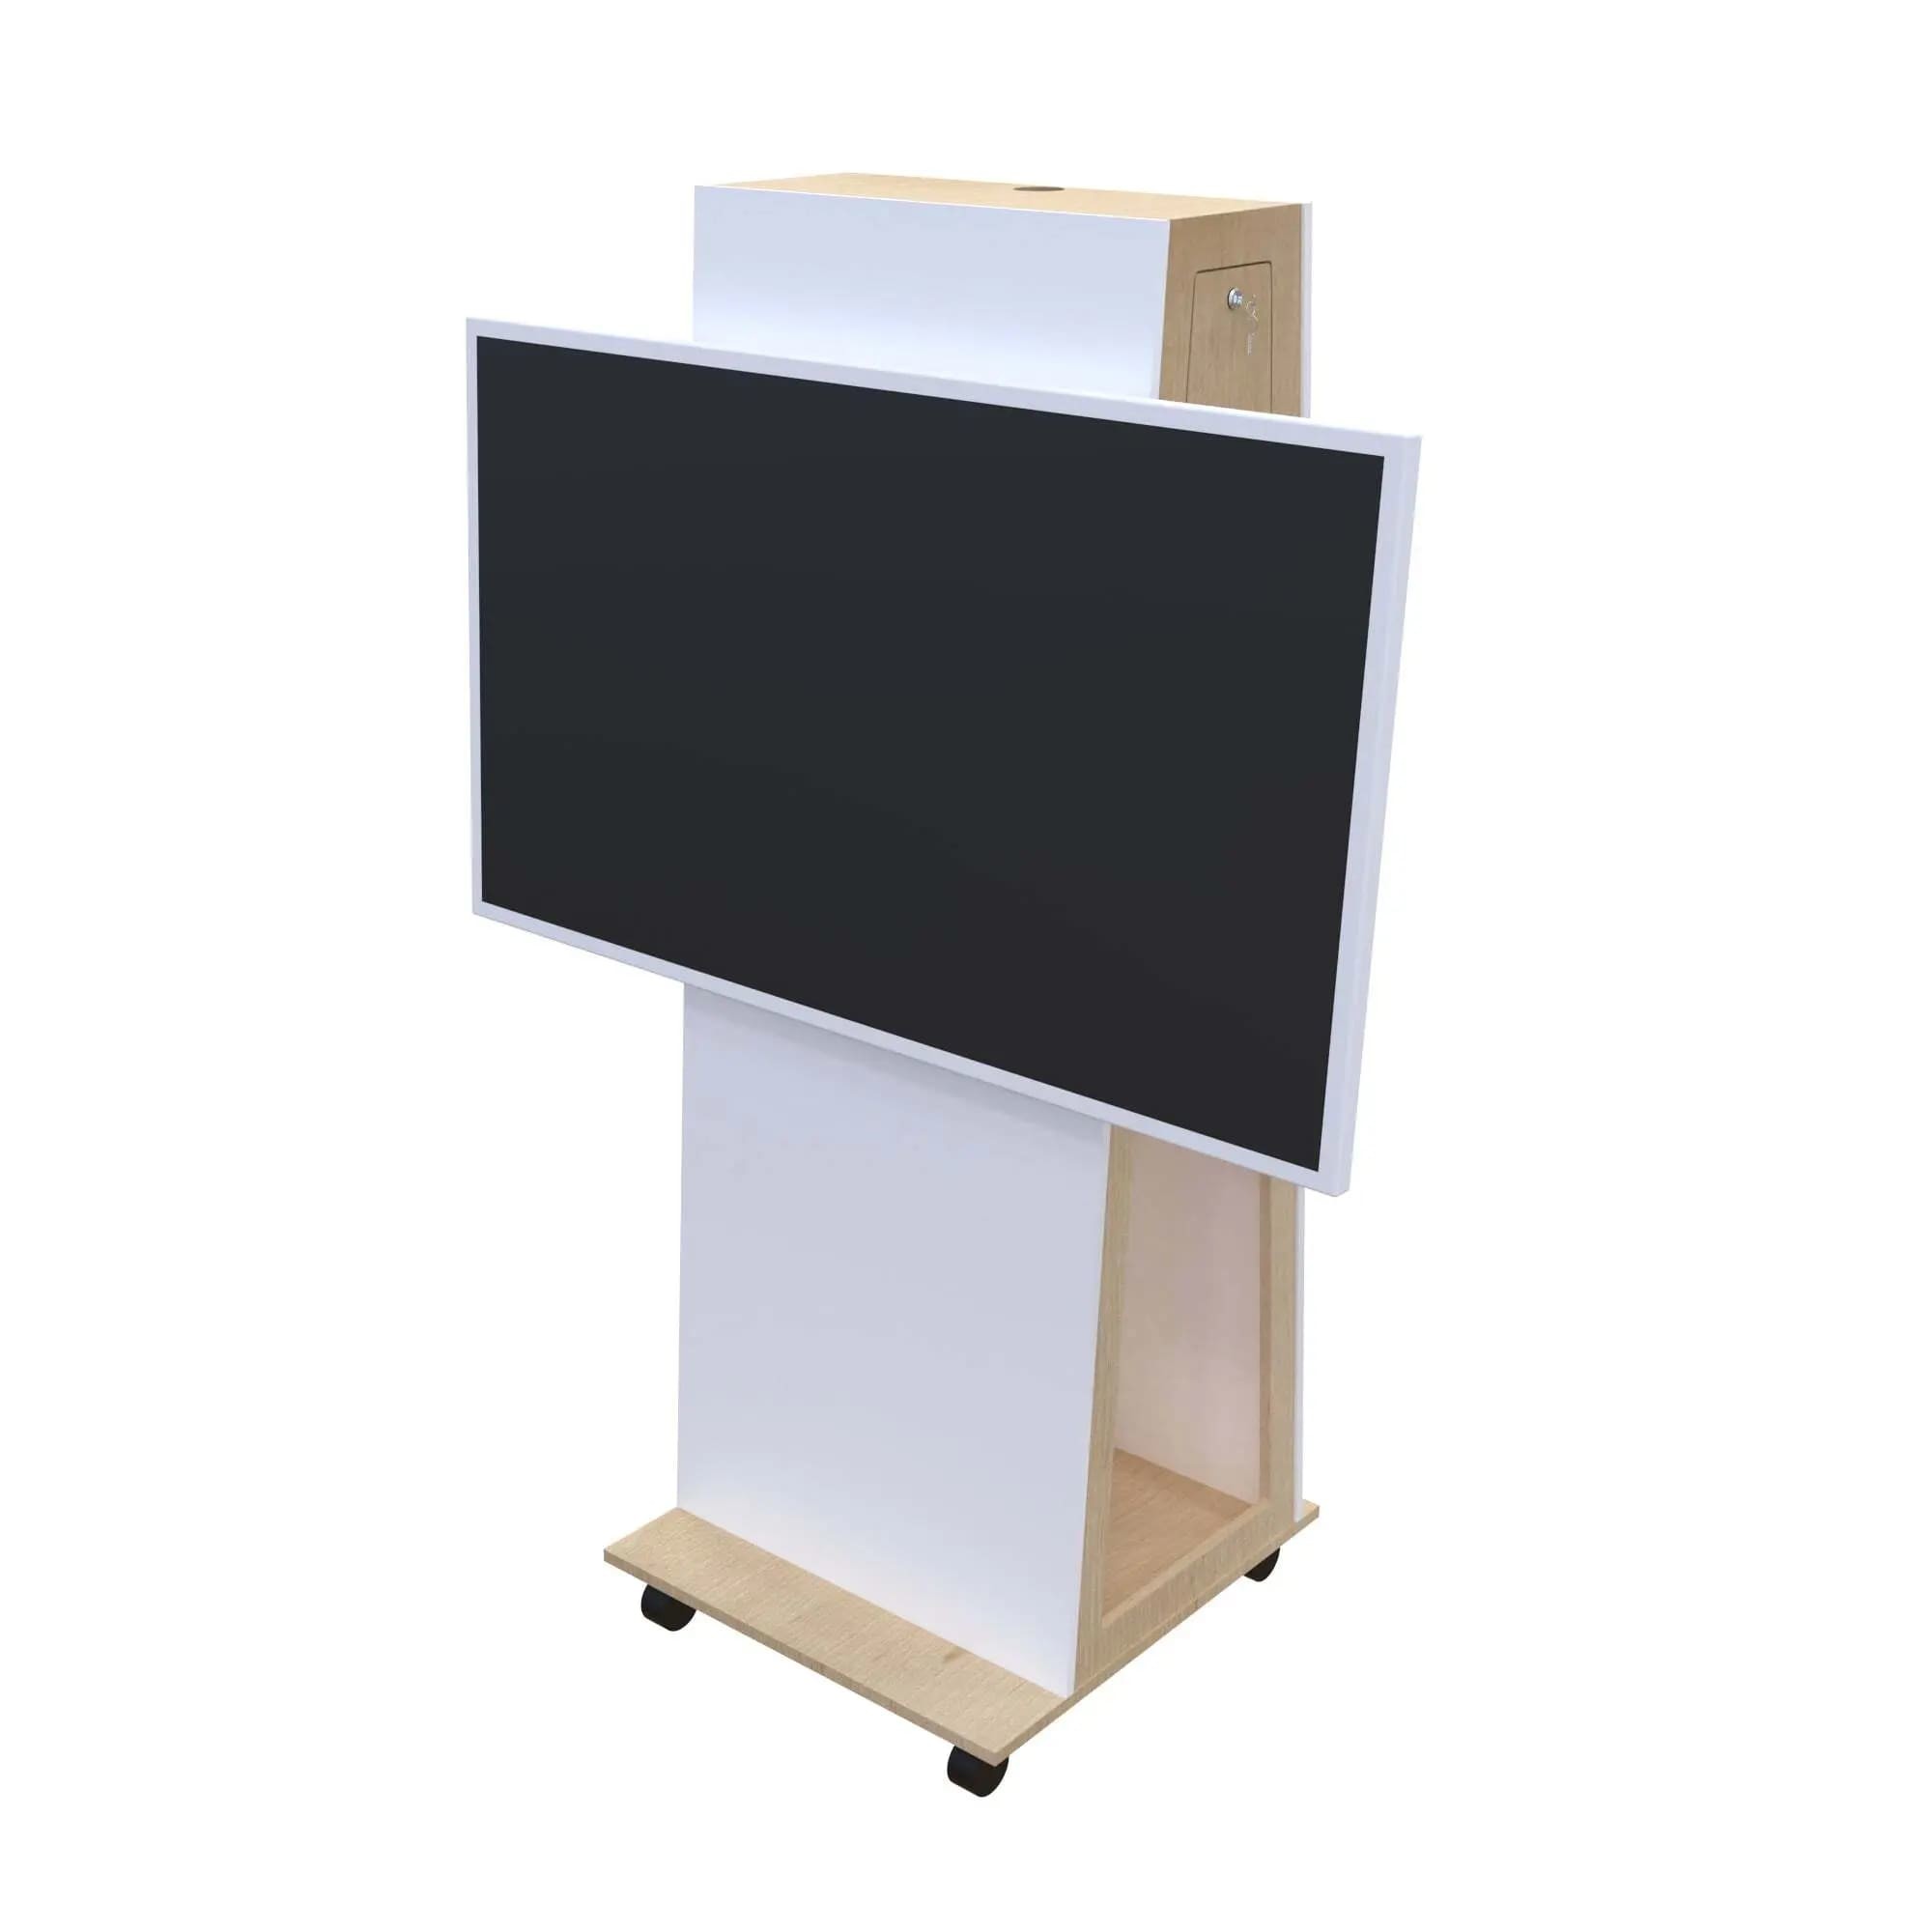 Monitor Standfuß Thola mit einem Whiteboard-Display (Querformat) als Digitales Whiteboard und Digitale Tafel. Besonderheiten: Abschließbare Serviceklappe, VESA-Drehgelenk zur Displayrotation (90°), Integrierte Rollen.